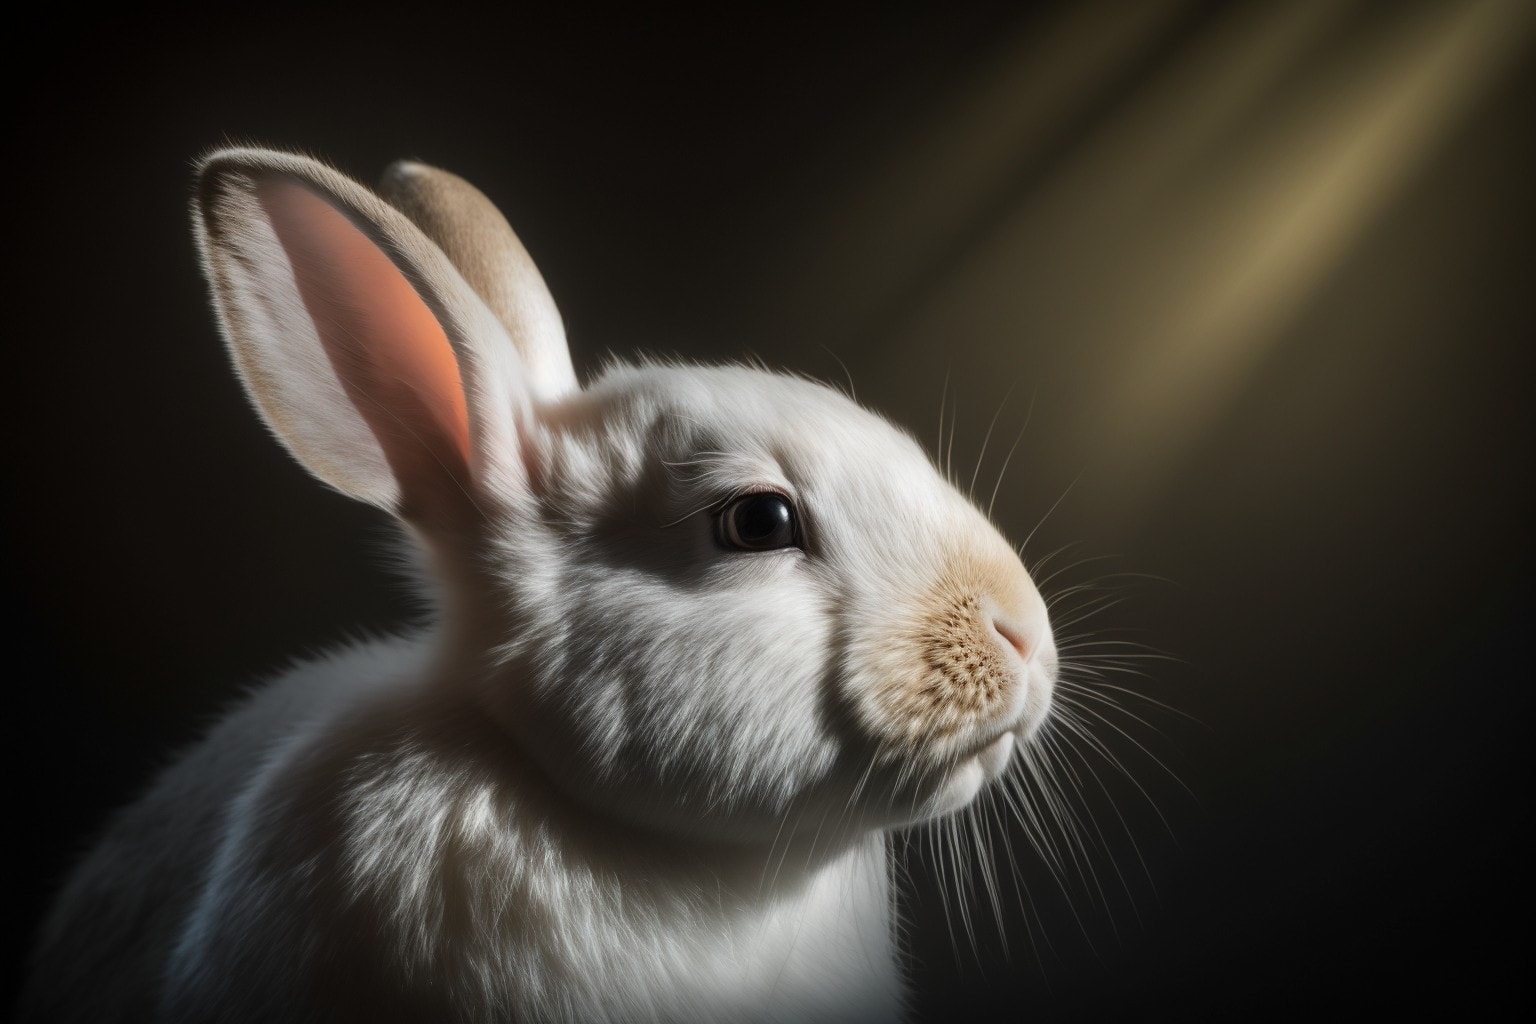 El mágico significado espiritual detrás del conejo blanco: descubre su simbolismo y mensaje para tu vida | Soy Espiritual